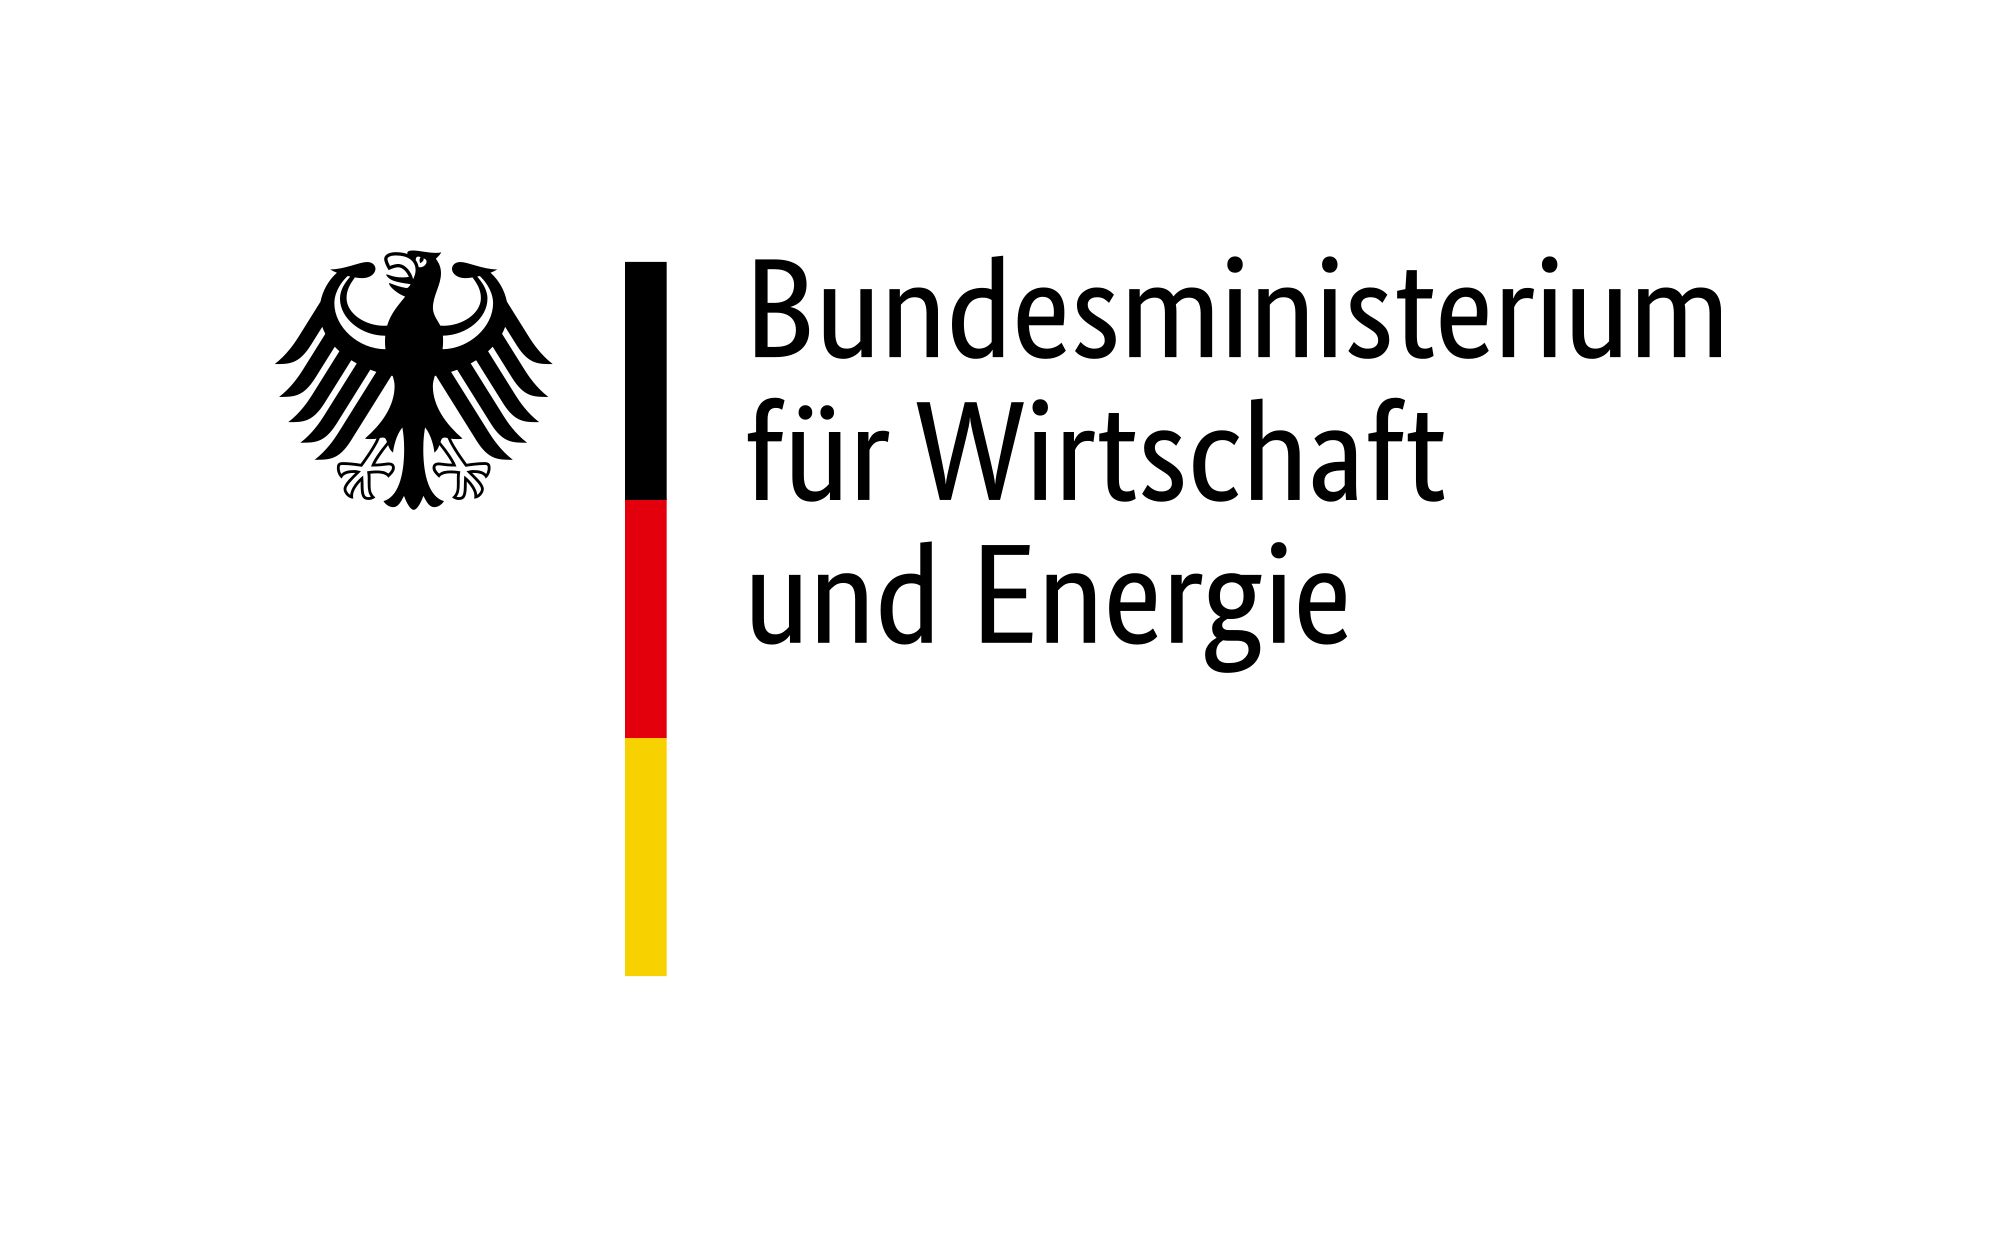 Bundesministerium für Wirtschaft und Energie Logo